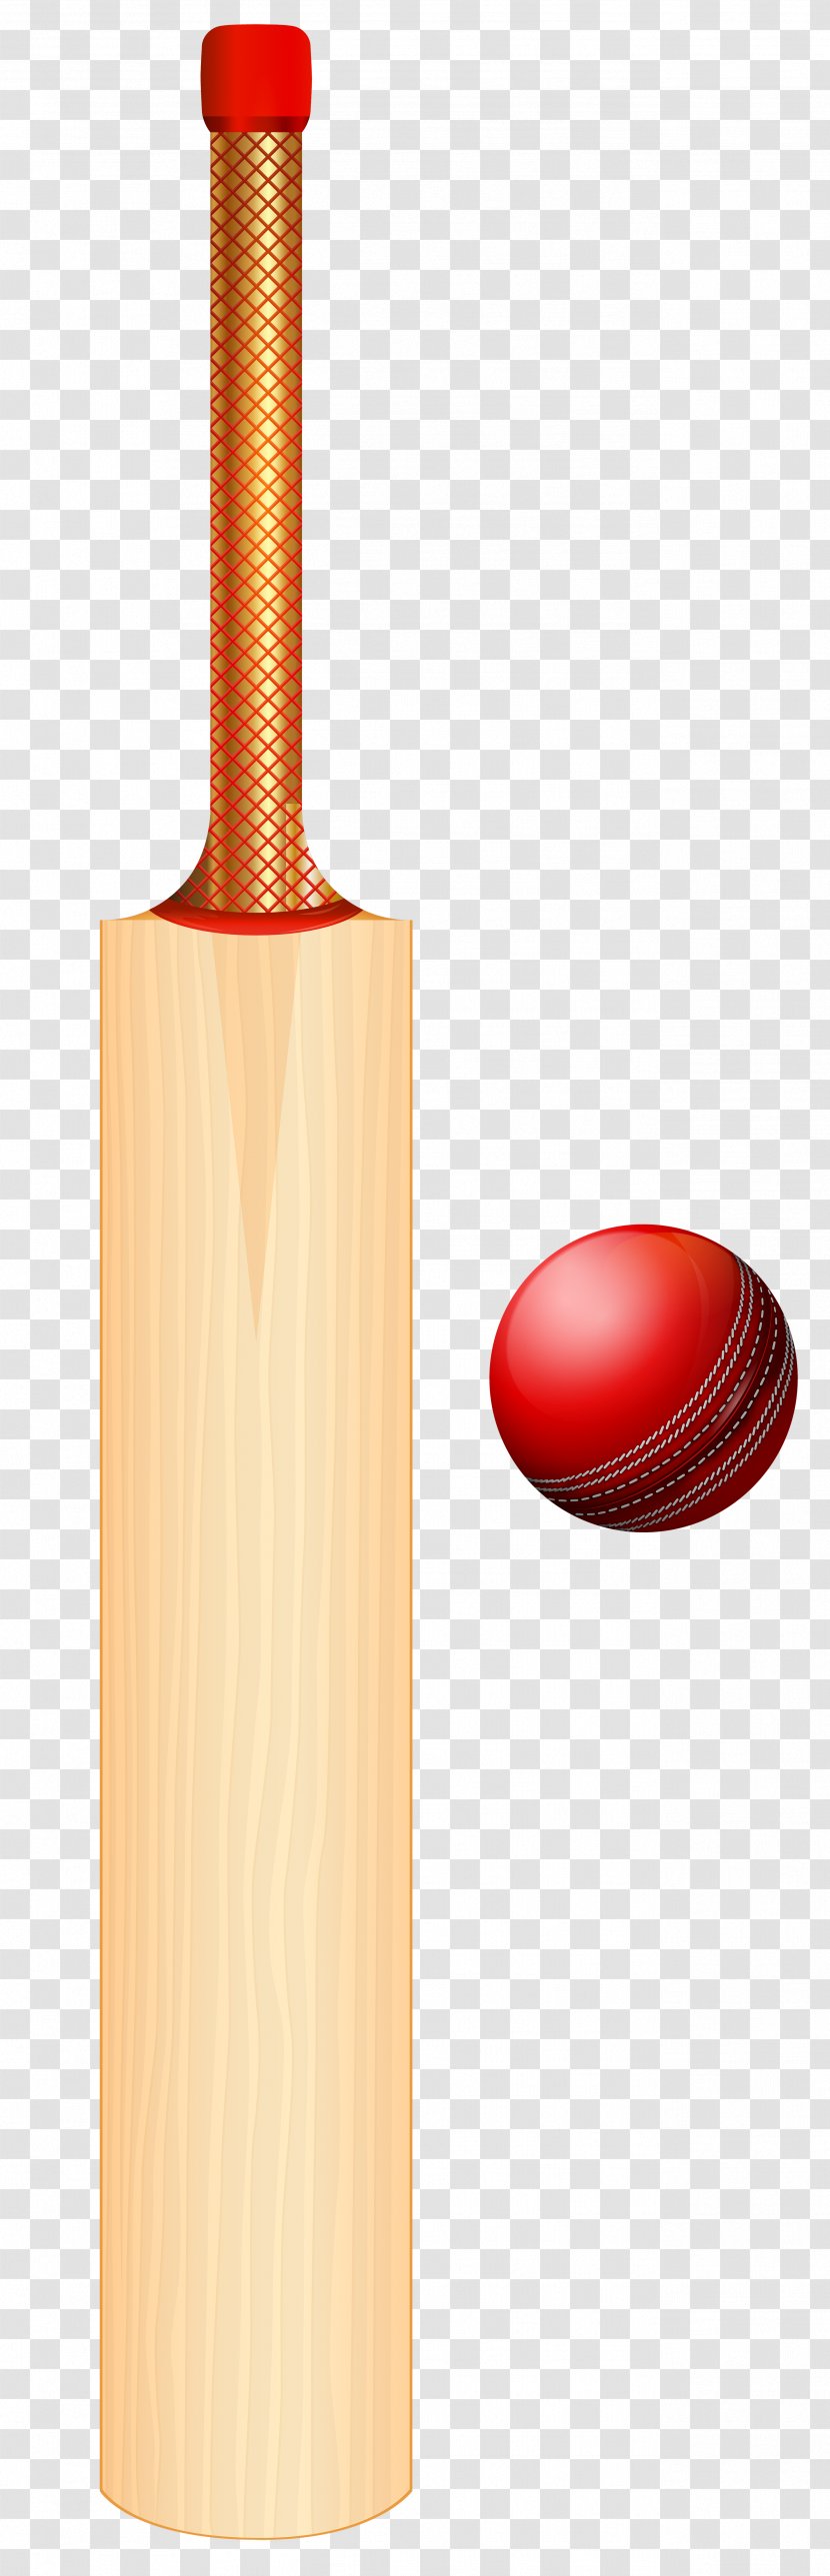 Cricket Bats Batting Balls Clip Art - Stump Transparent PNG